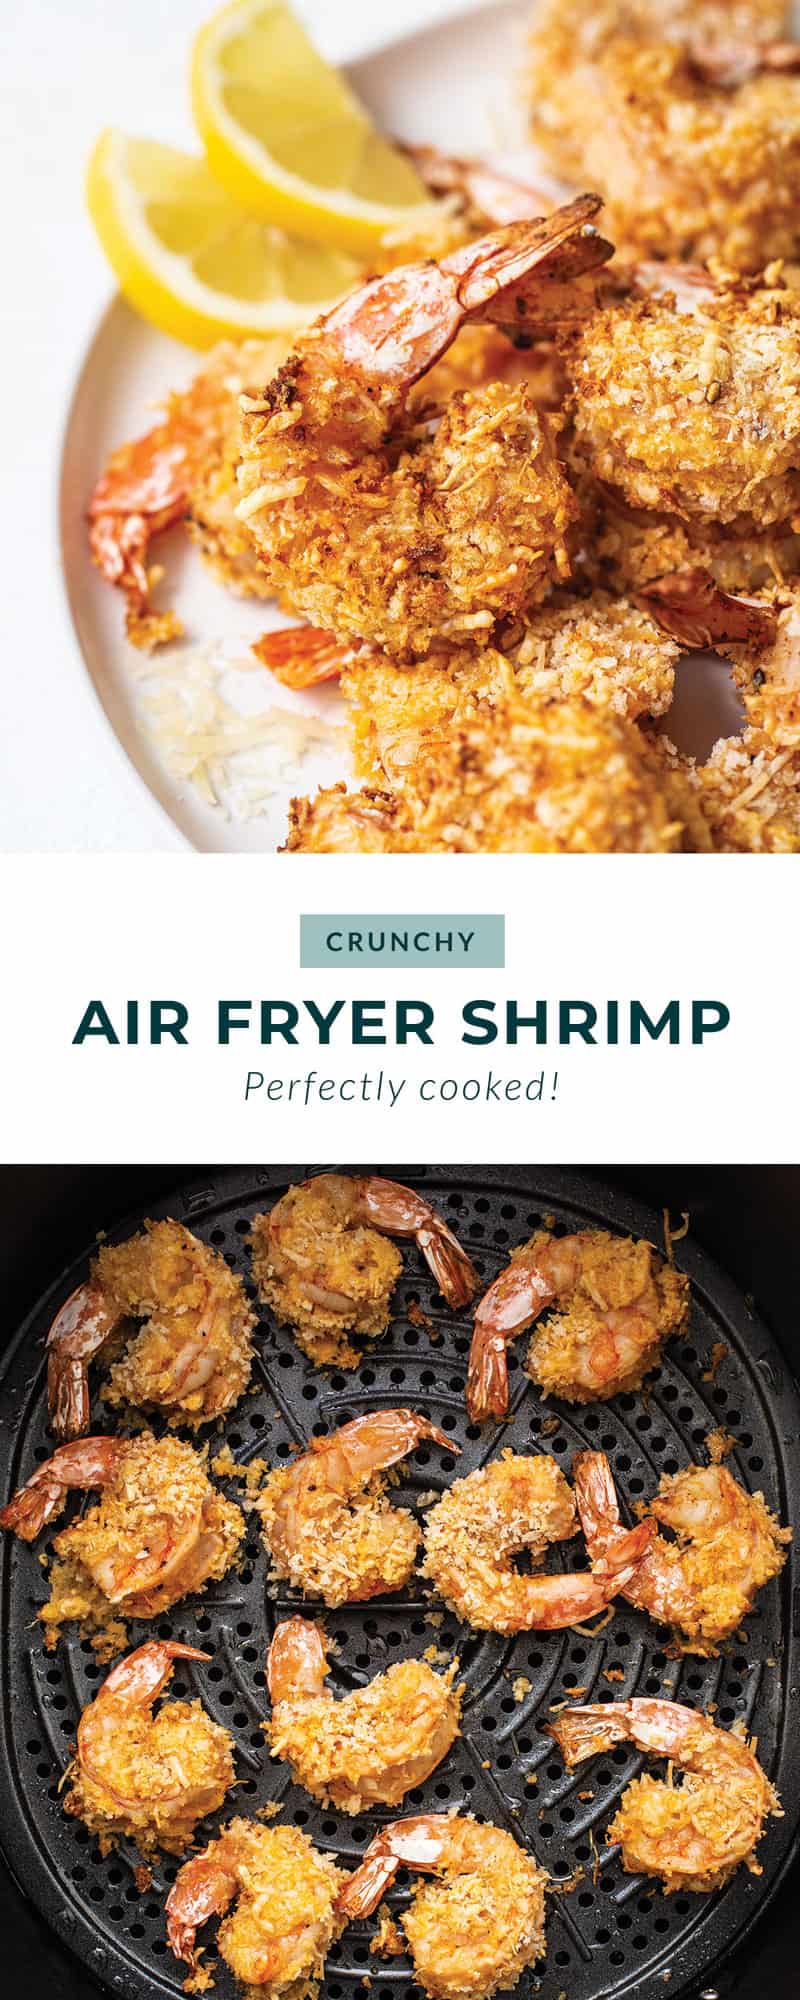 Air fryer shrimp.